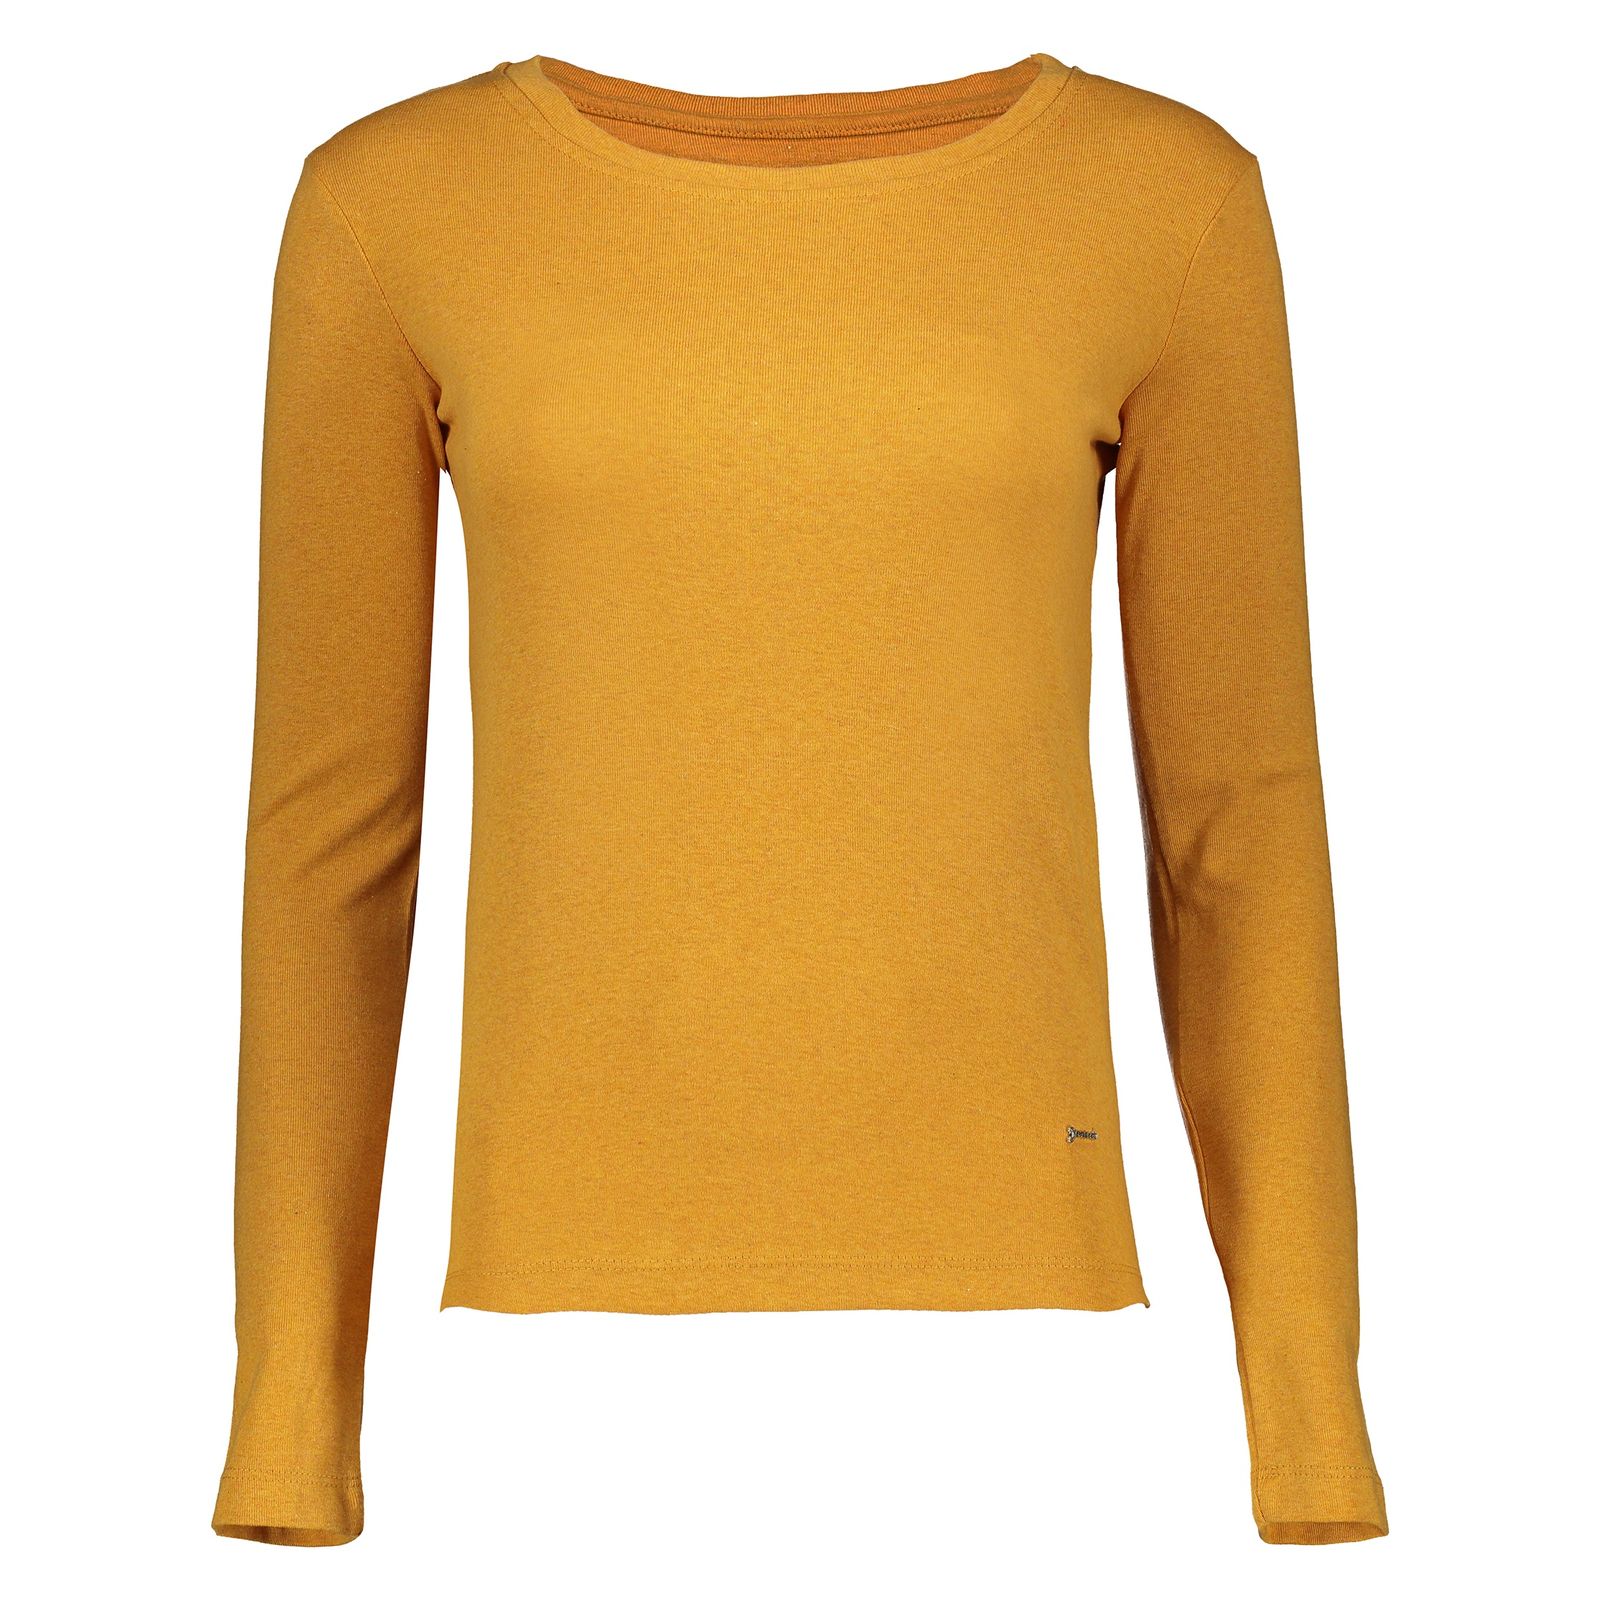 تی شرت زنانه گارودی مدل 1003107001-16 - نارنجی - 1